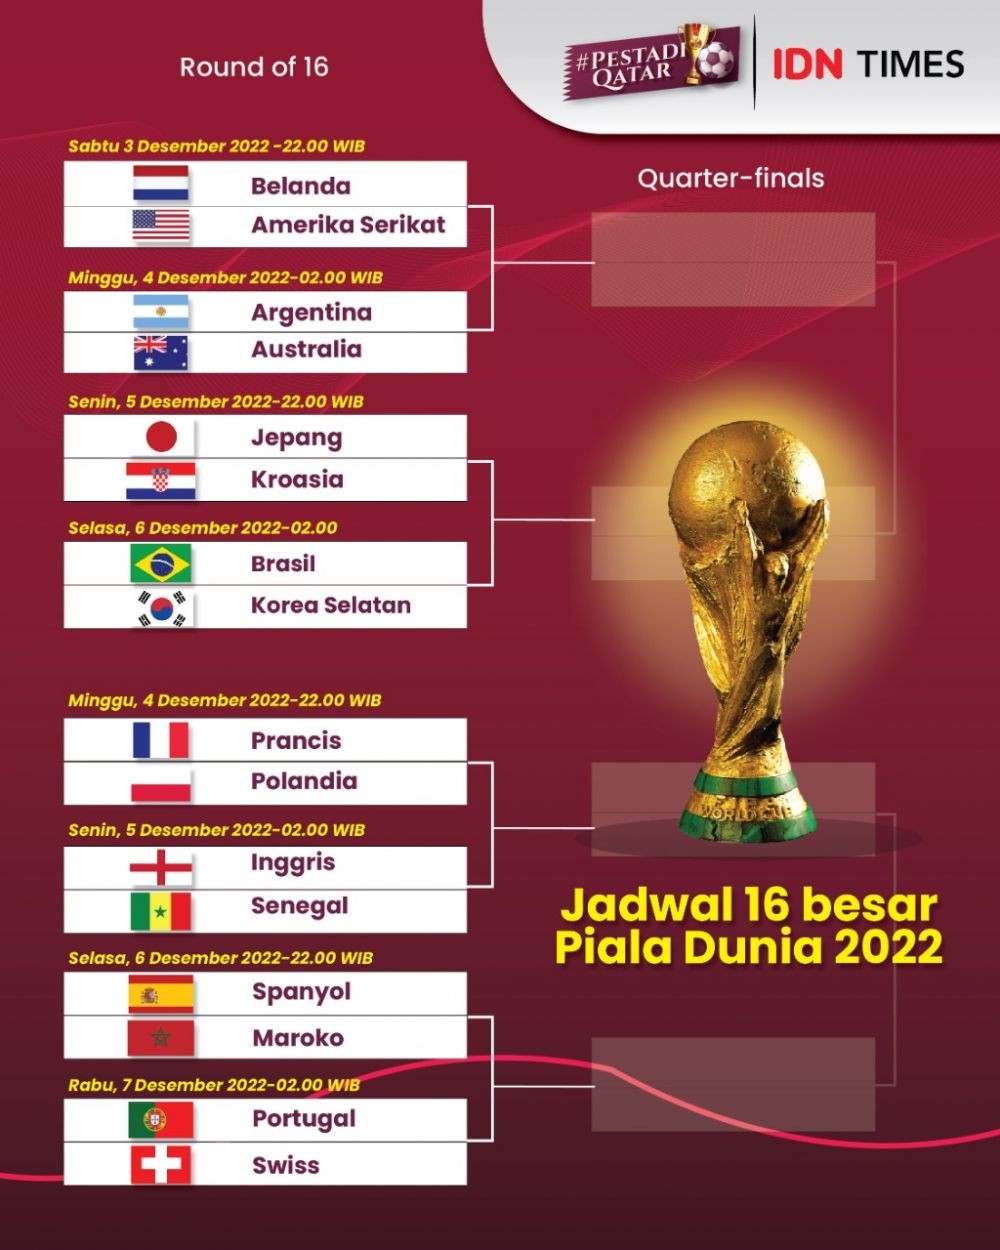 Jadwal Lengkap Babak 16 Besar Piala Dunia 2022 